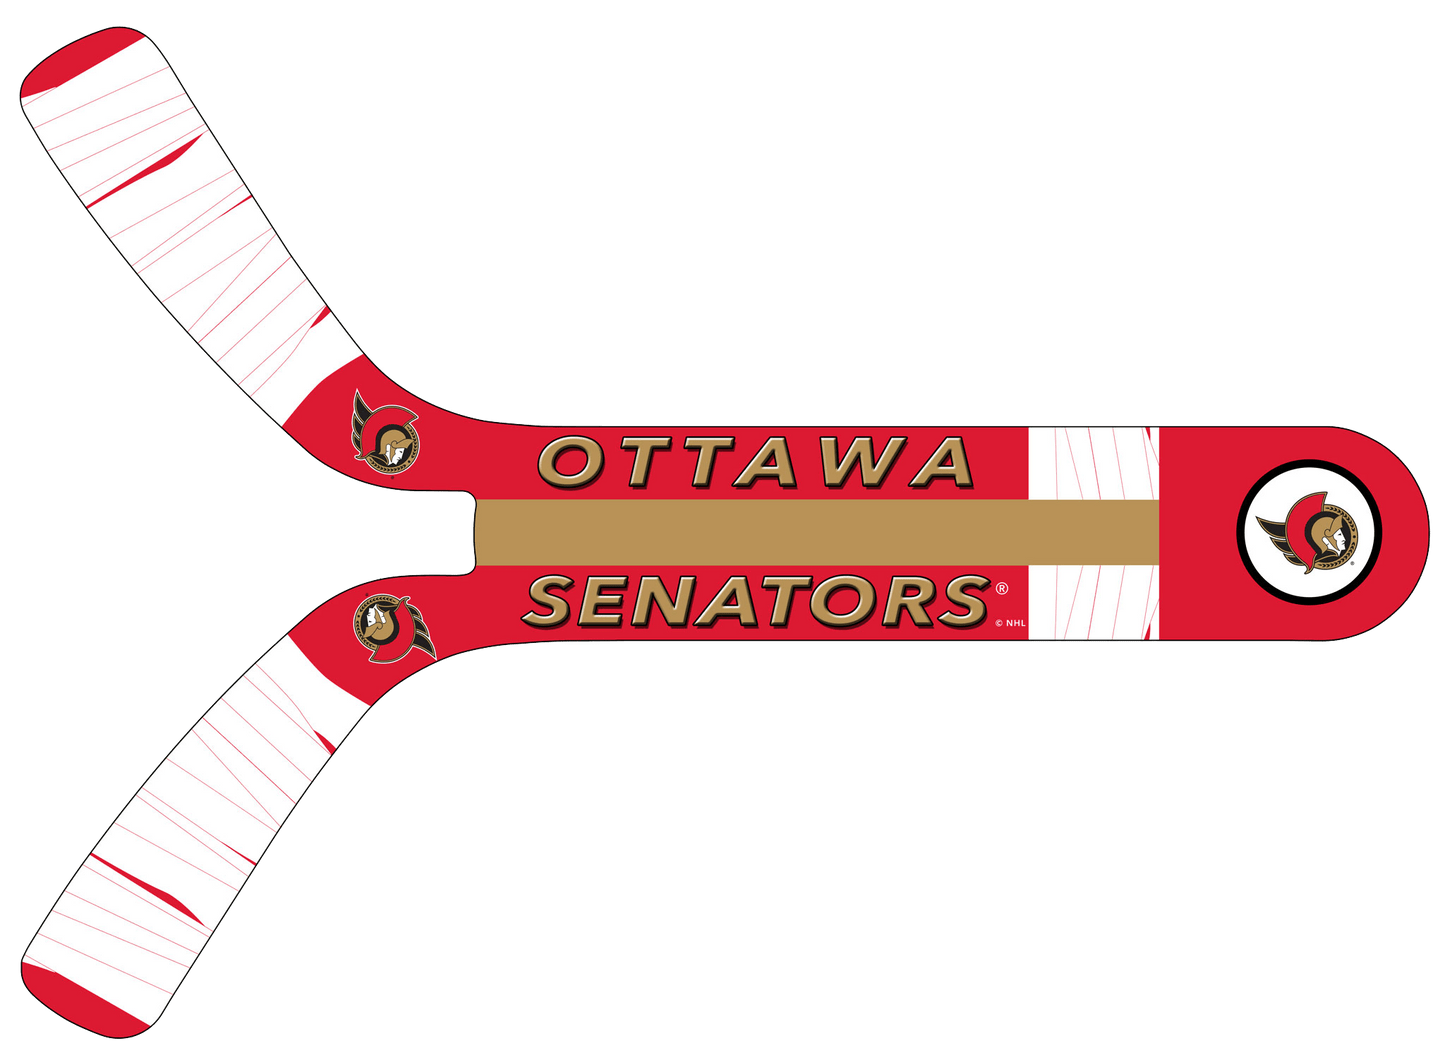 Ottawa Senators® Fan Blades